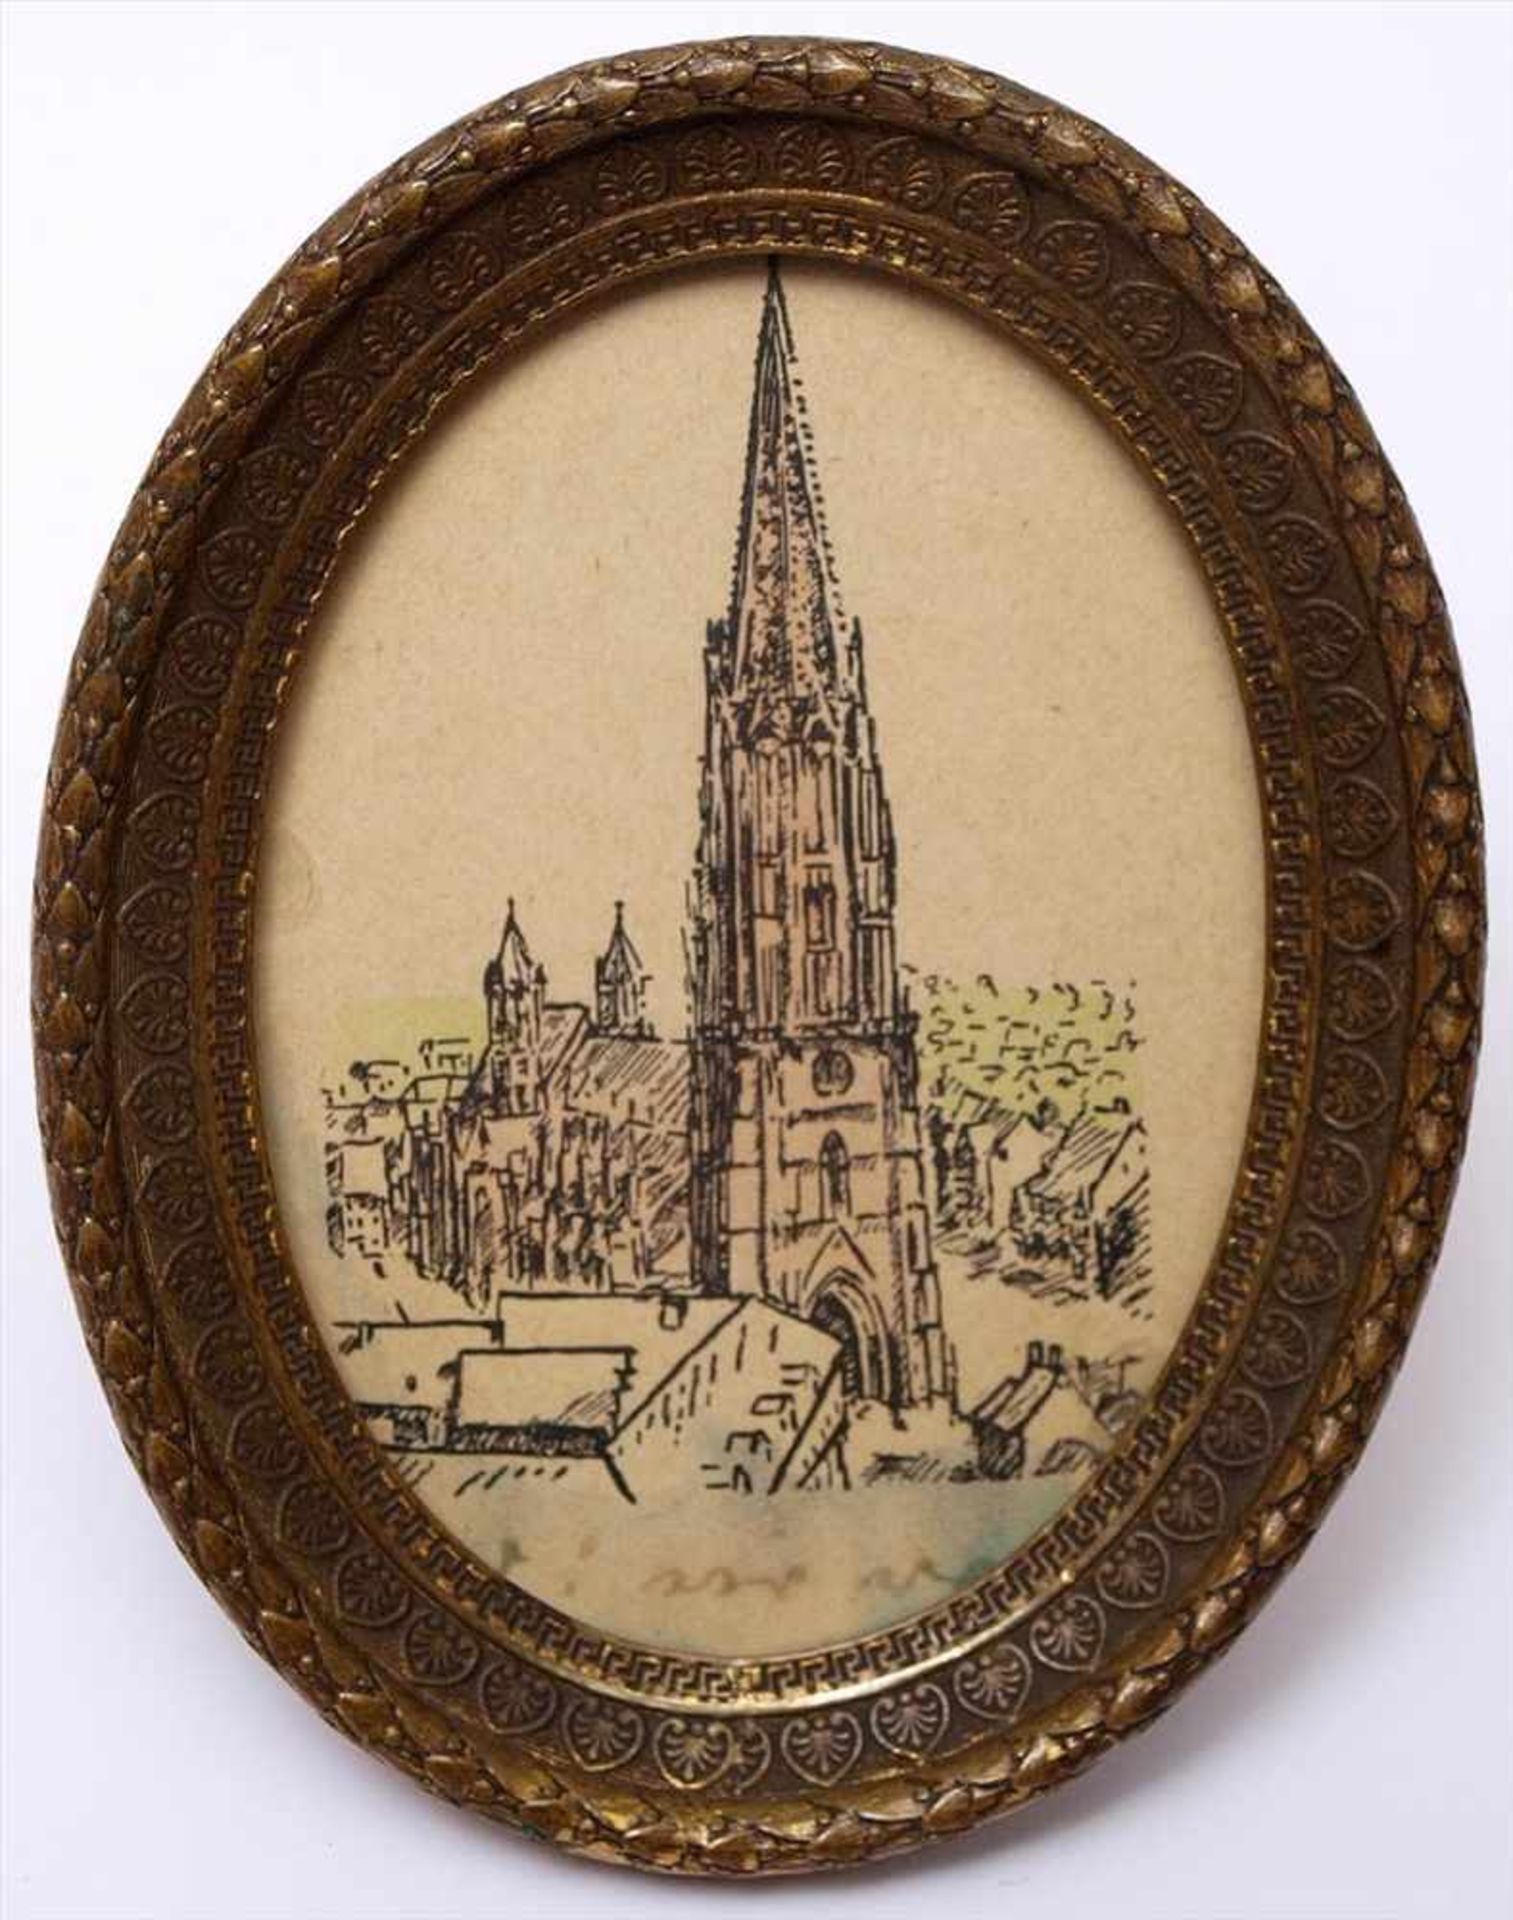 Miniatur, 19.Jhdt.Blick auf das Freiburger Münster mit umgebenden Häusern. Tusche/Papier, koloriert.